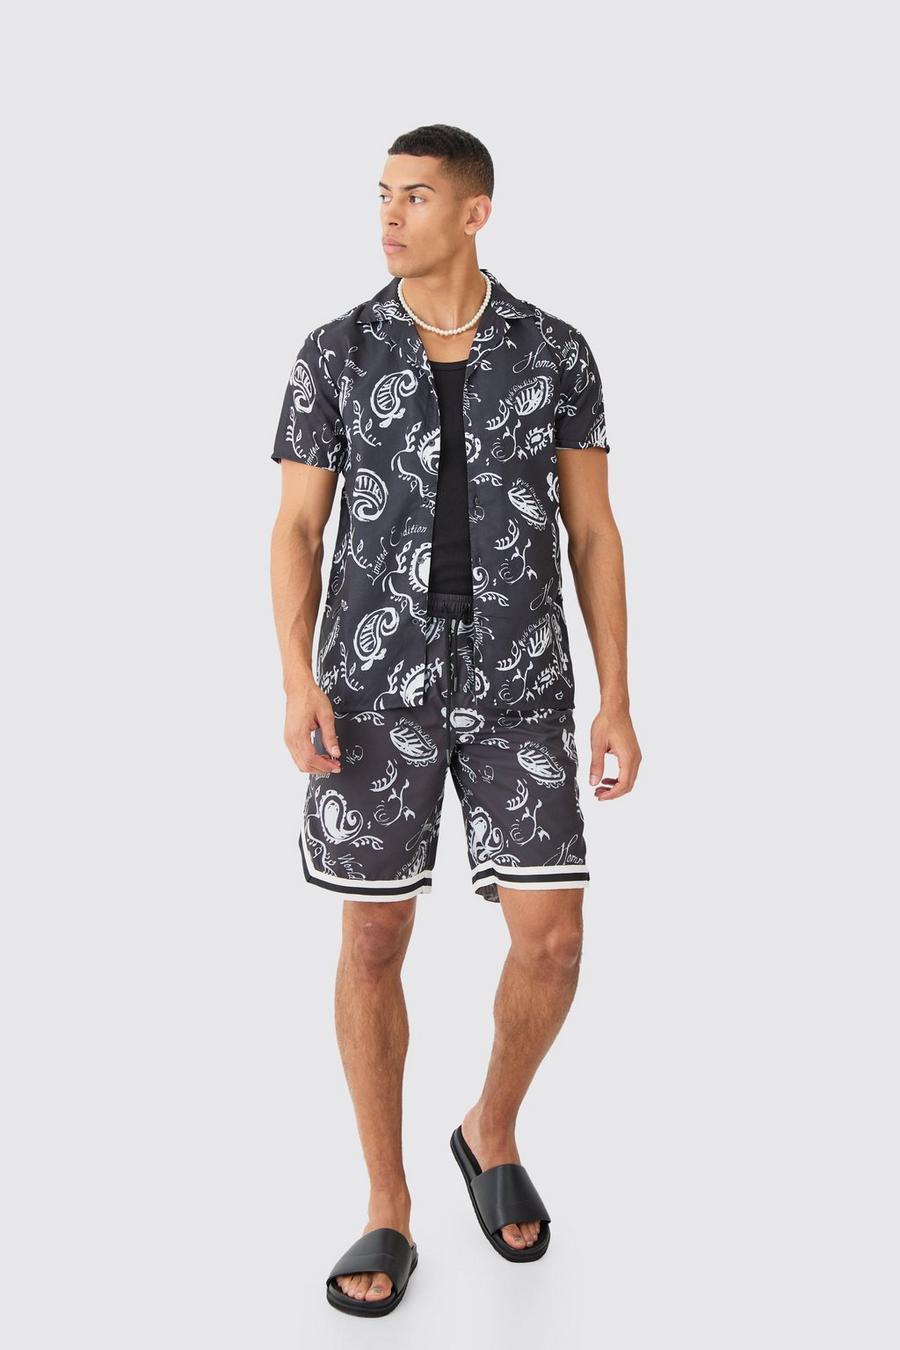 Black Short Sleeve Bandana Shirt & Swim Set